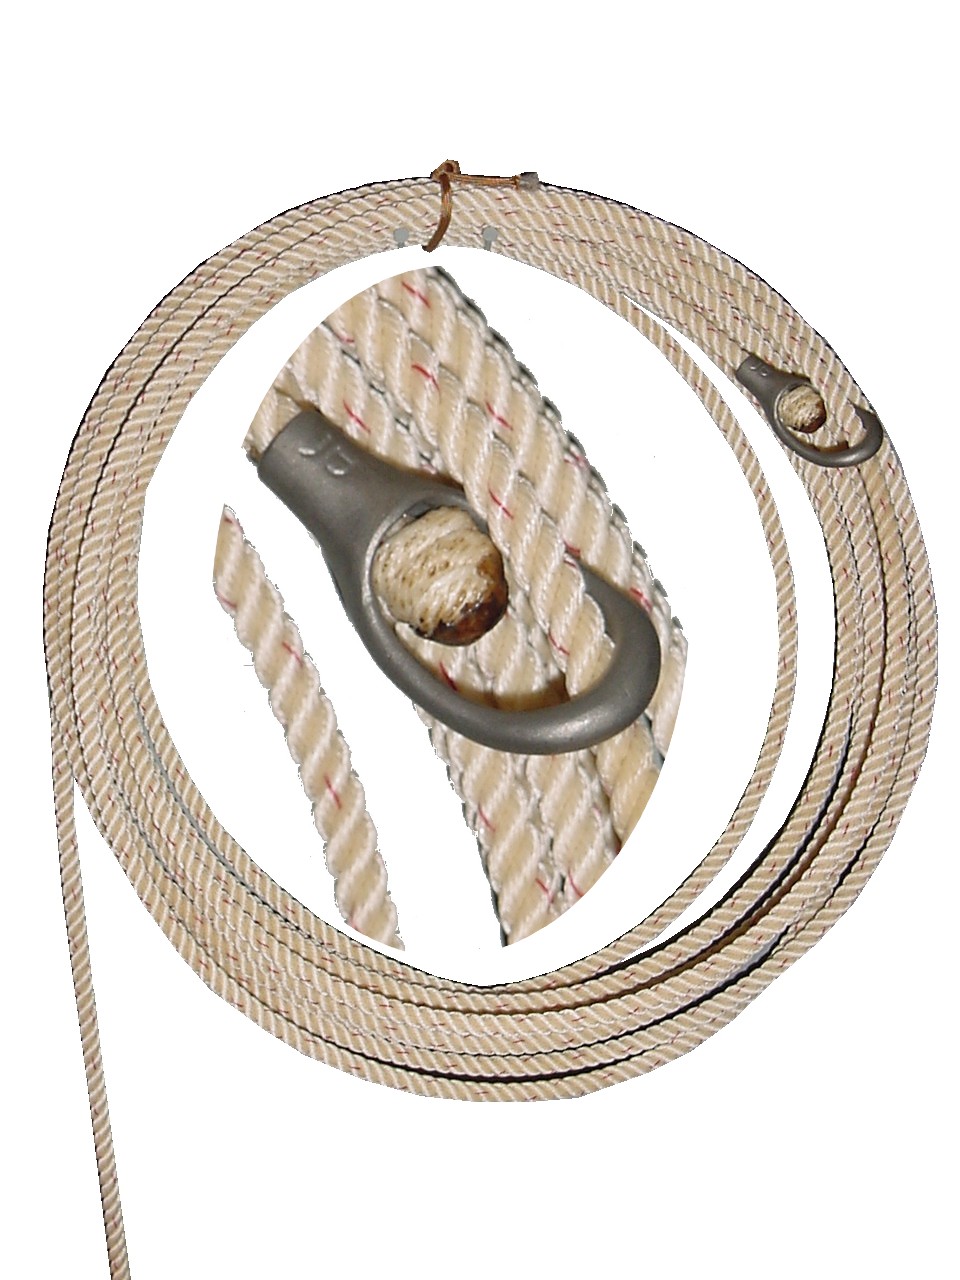 Ranch Rope, Poly blend, 40 & 50 foot/ custom lengths, Metal or rawhide honda